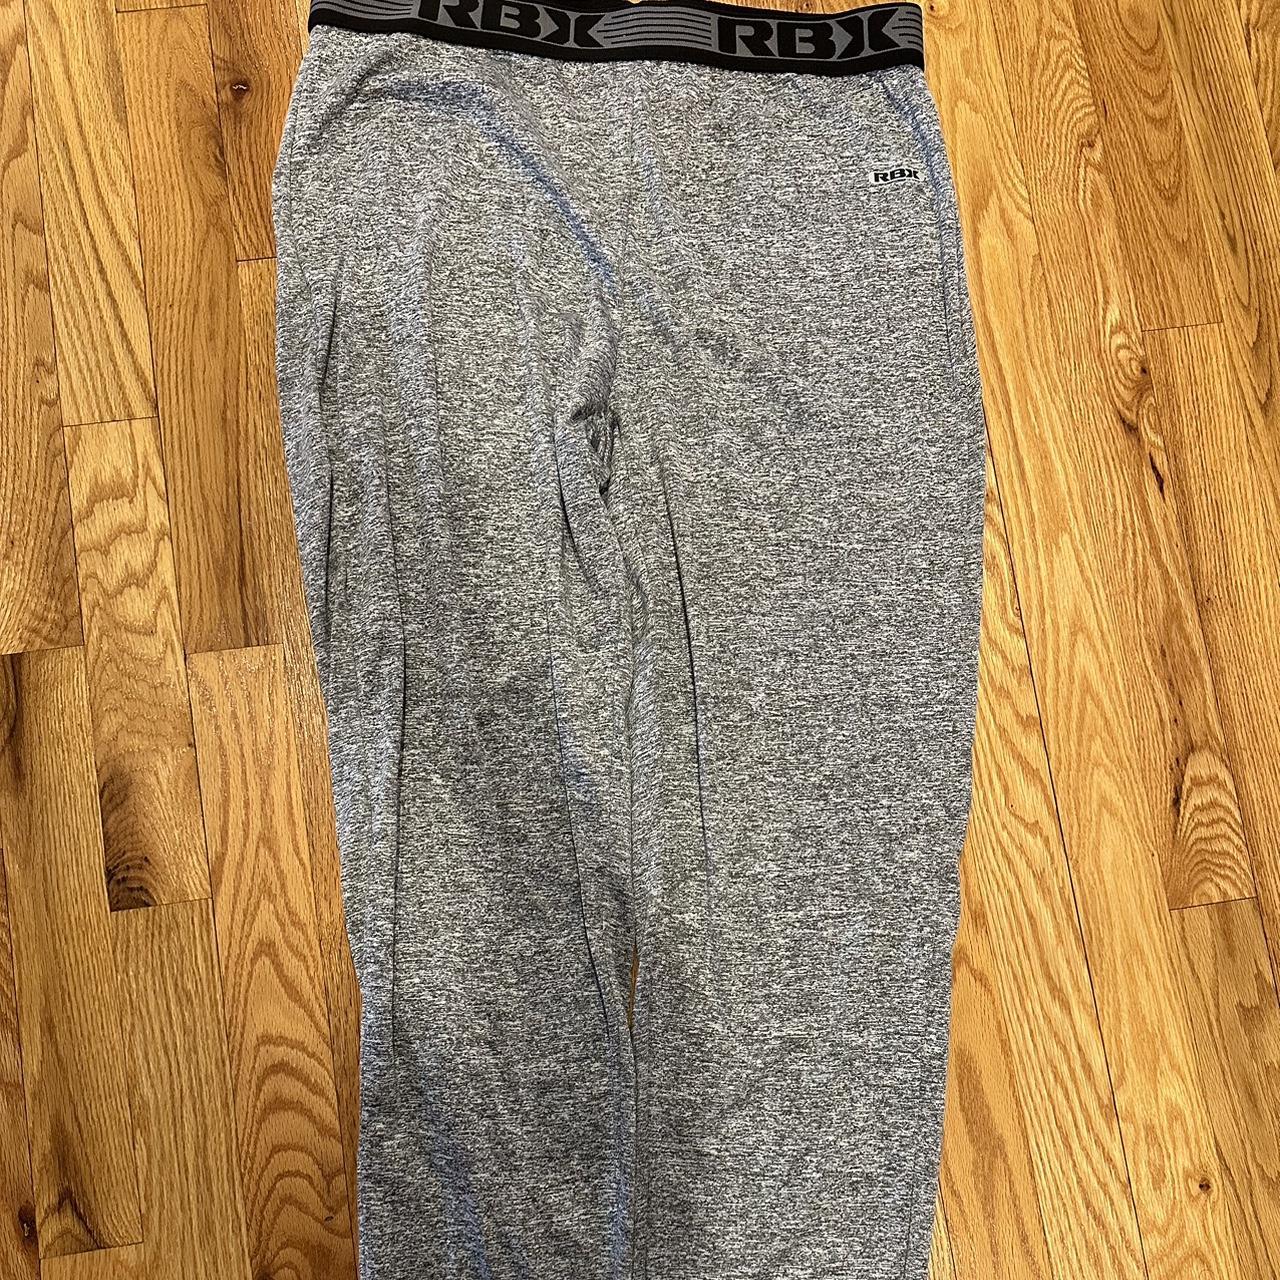 RBX Workout Pants XL Mens Brand New never worn. - Depop